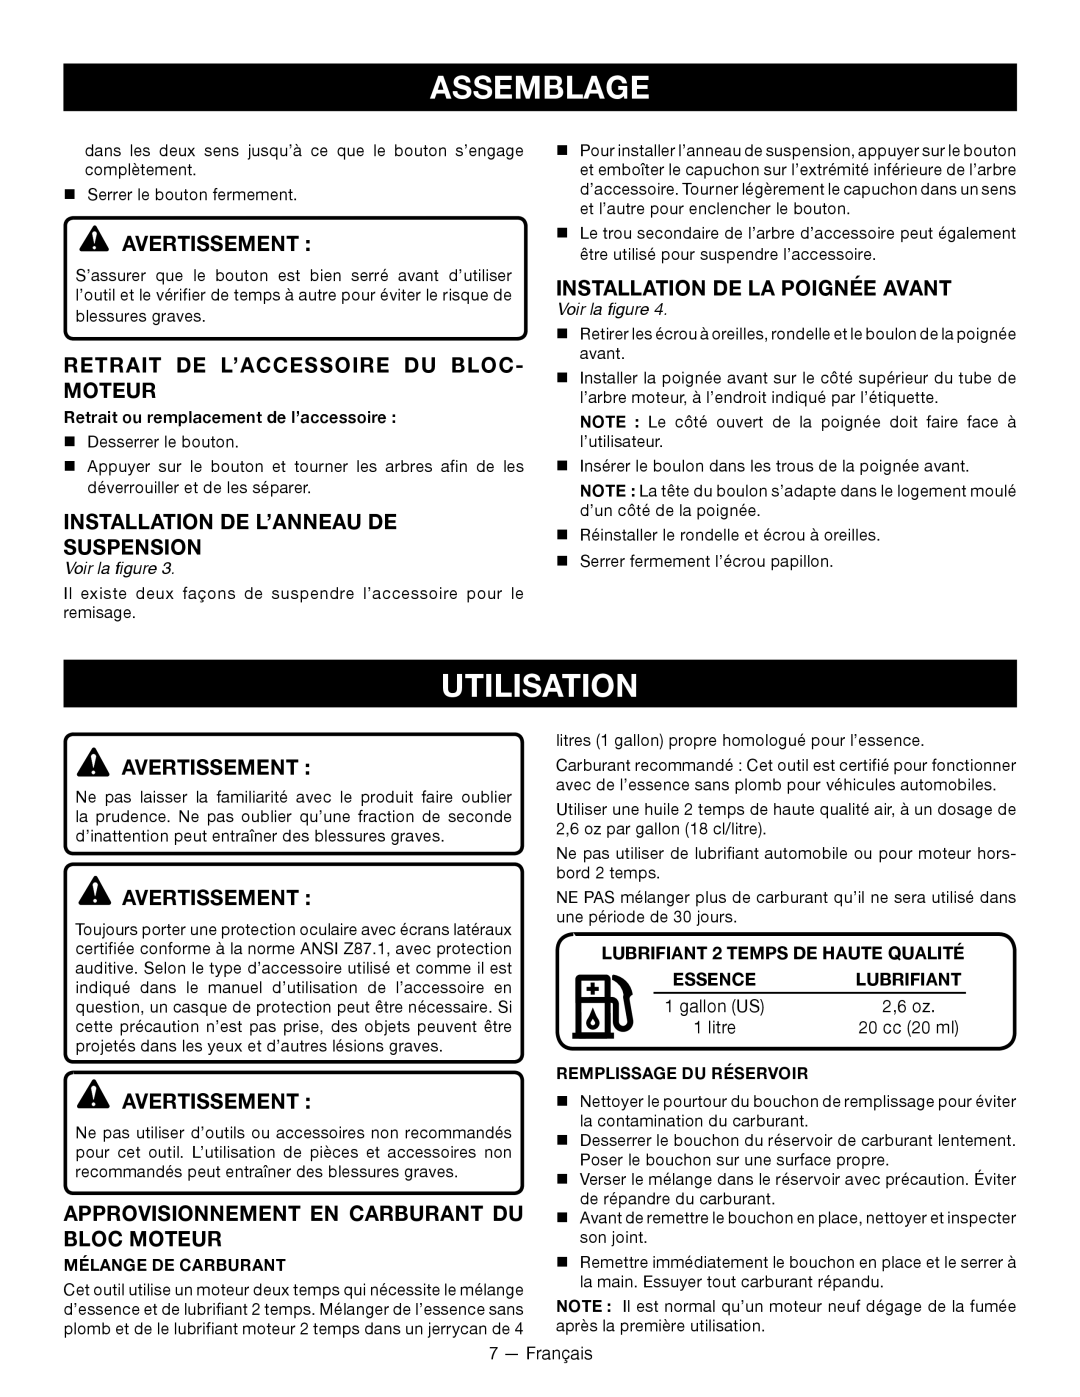 Ryobi RY28000 Utilisation, Retrait De L’Accessoire Du Bloc- Moteur, Installation De L’Anneau De Suspension, Assemblage 